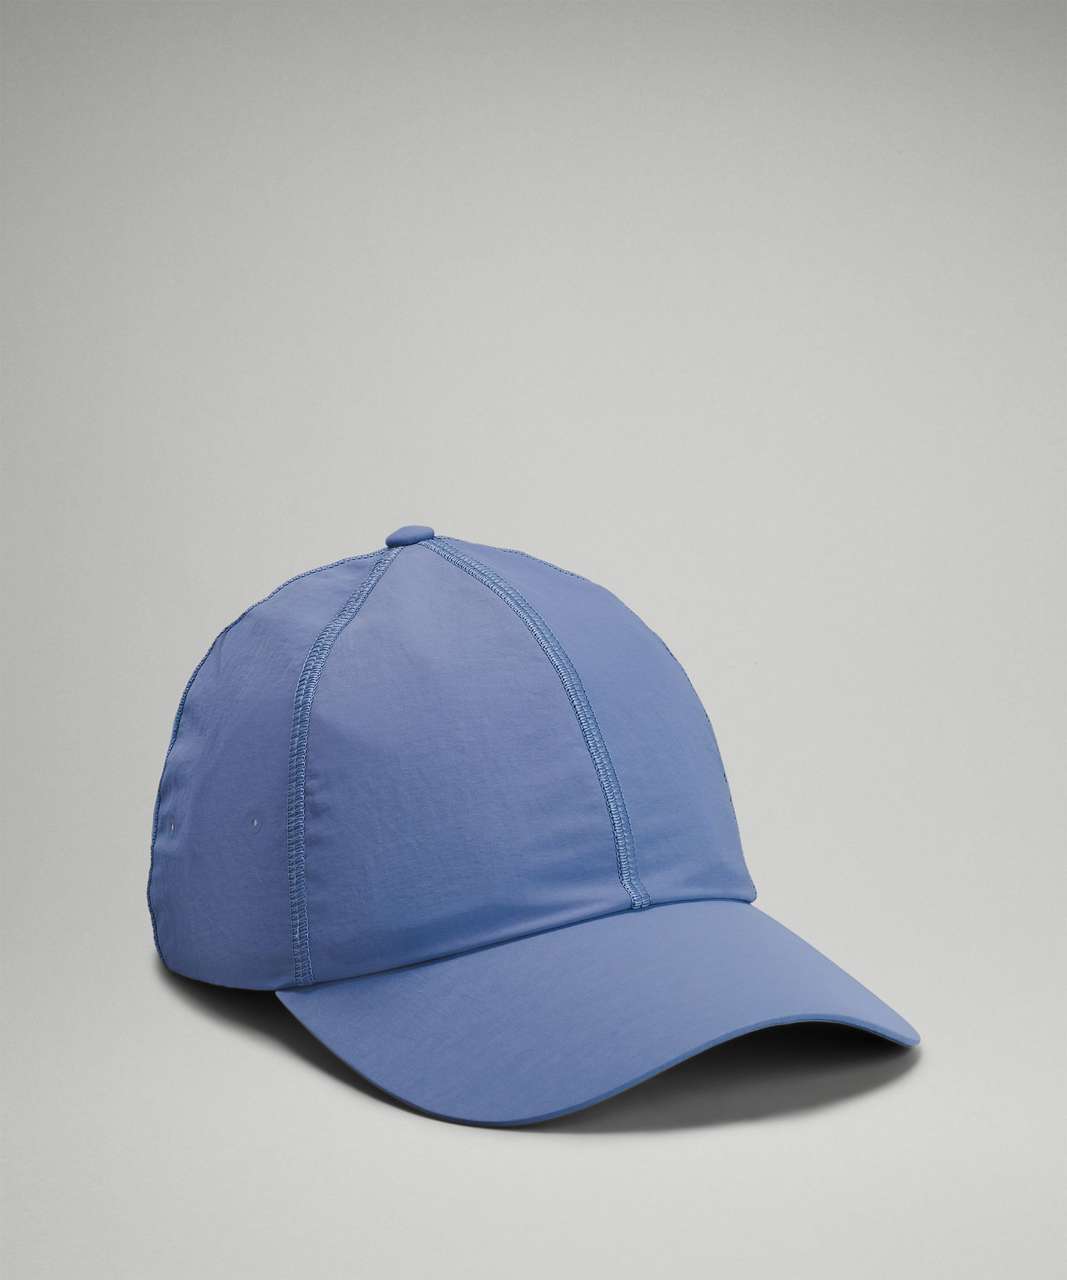 Lululemon Baller Hat Soft - Water Drop